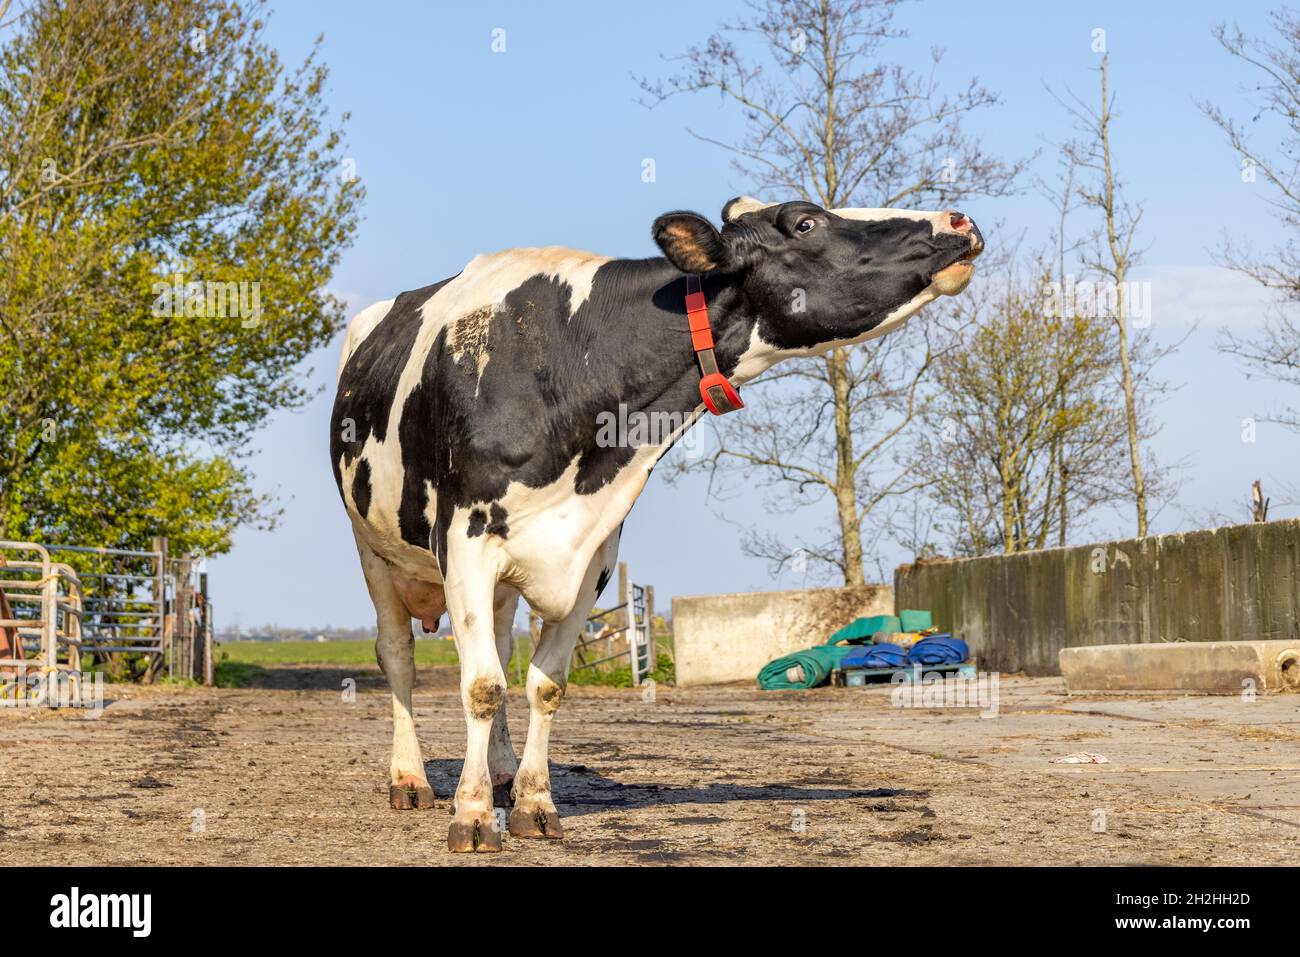 Vache hurlante debout, cou étiré dans une cour de ferme sur un chemin, totalement en vue Banque D'Images